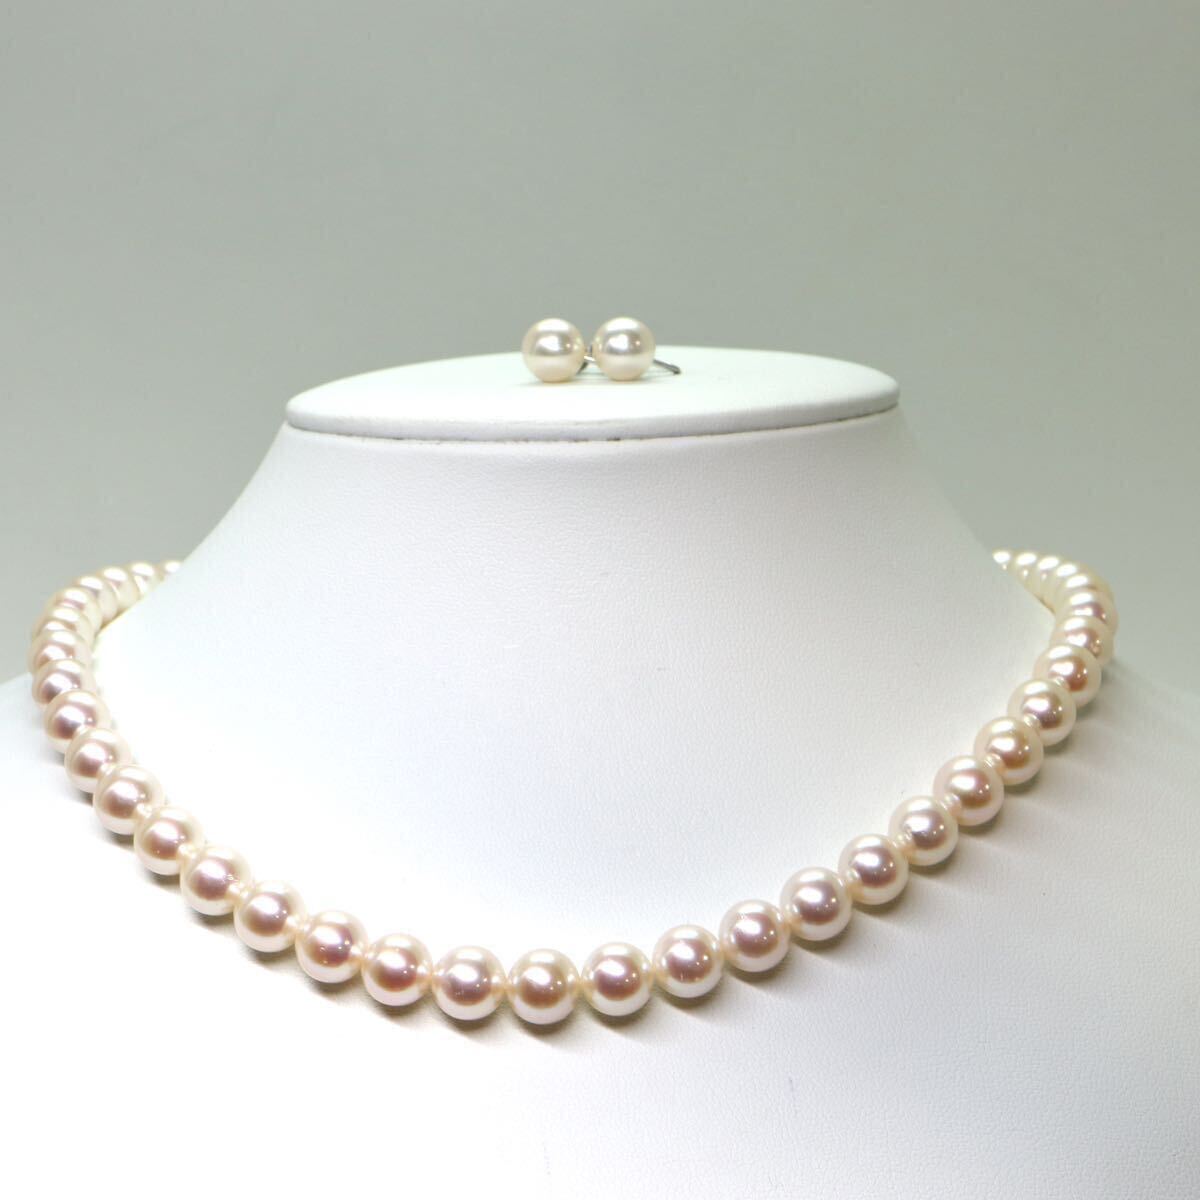 美品!!TASAKI(田崎真珠)箱付!!《アコヤ本真珠ネックレス/K14WGイヤリング》M 44.5g 約8.0-8.5mm珠 約42cm pearl necklace jewelry EA6/EF6_画像3